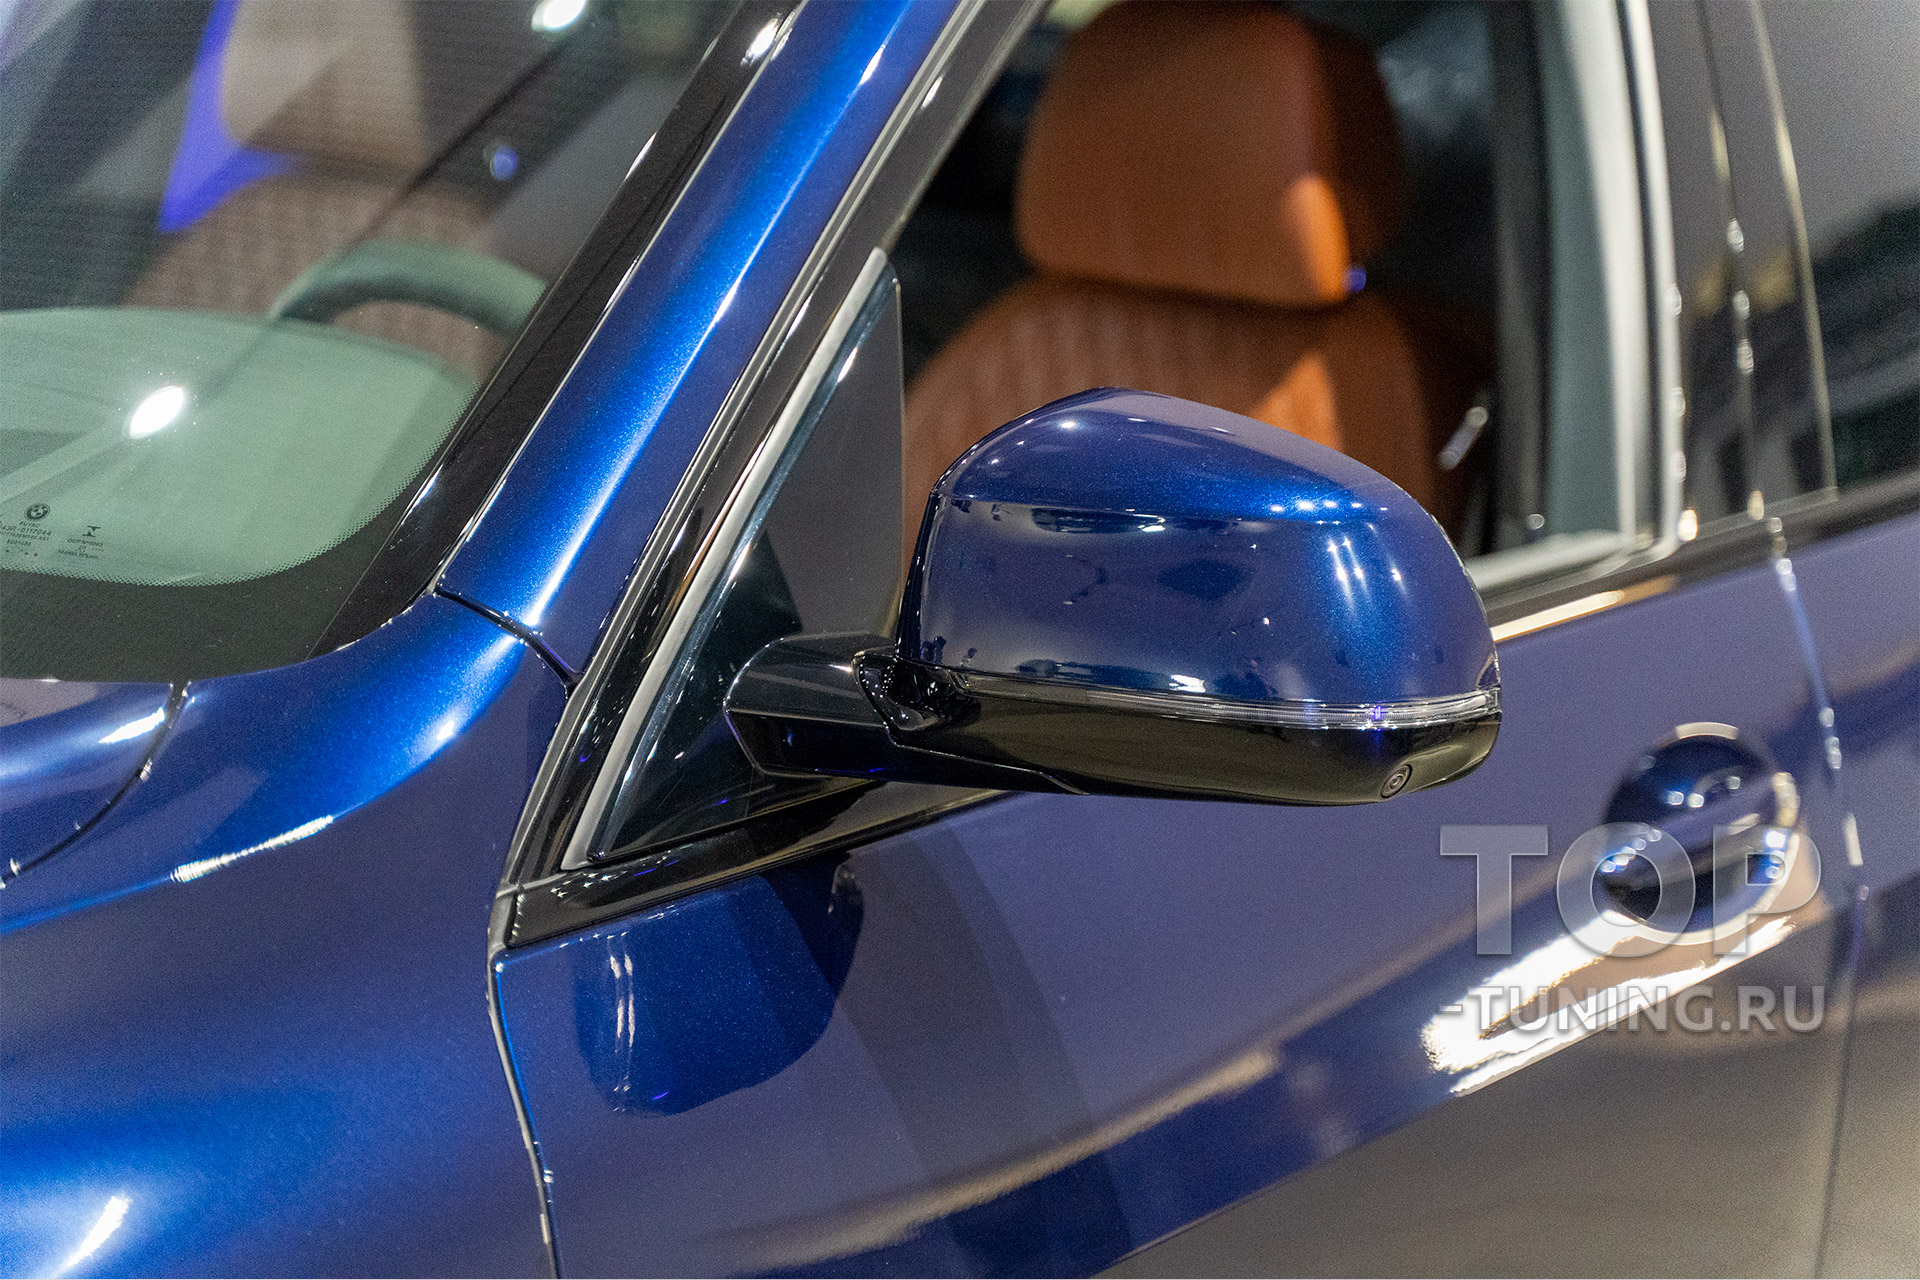 Срочная оклейка автомобиля полиуретановой пленкой под ключ в Топ Тюнинг Москва